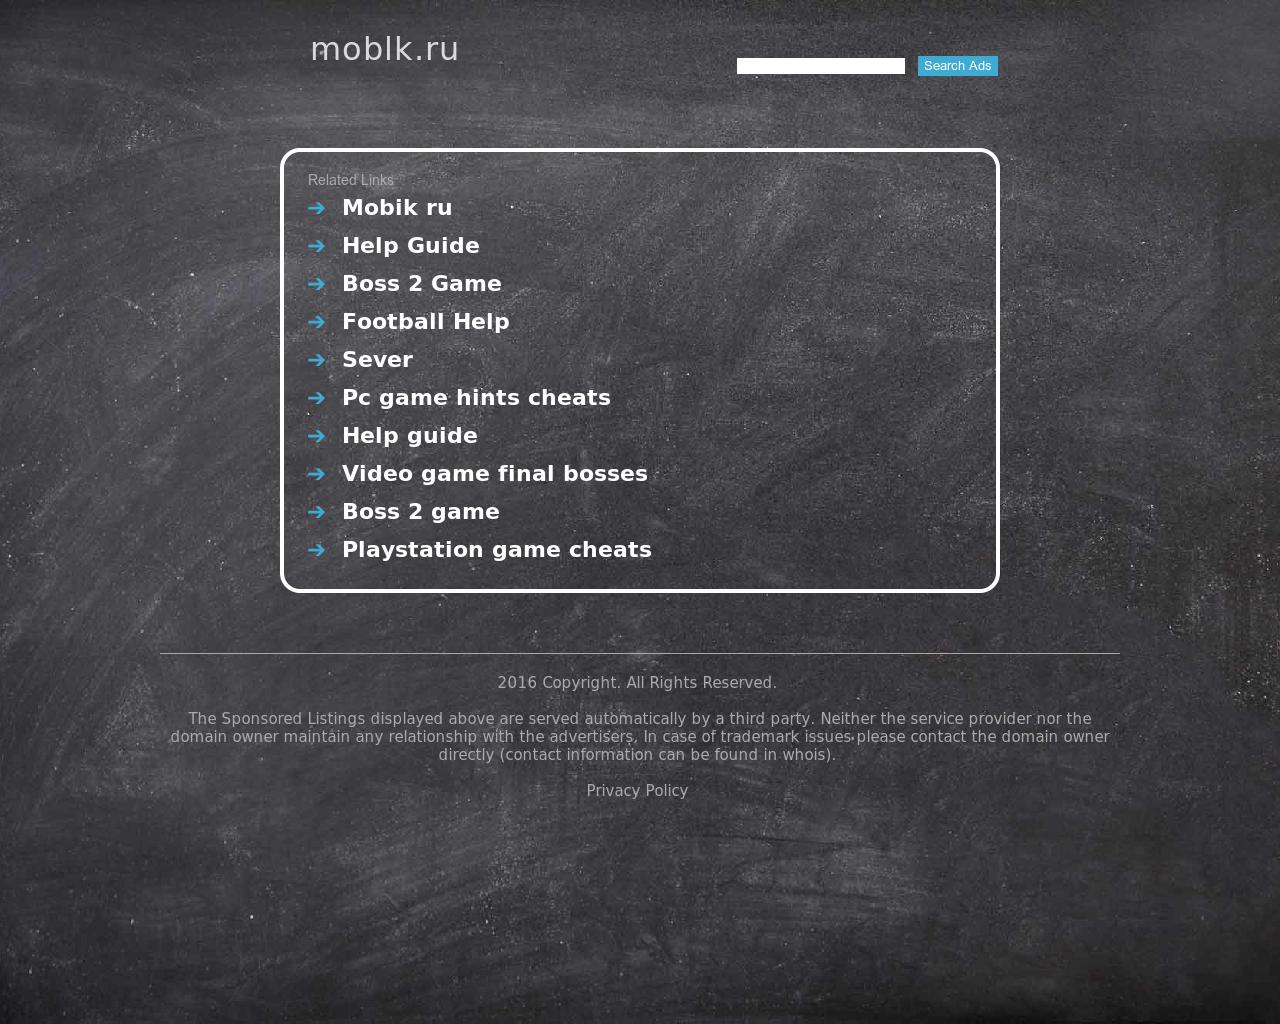 Изображение сайта moblk.ru в разрешении 1280x1024